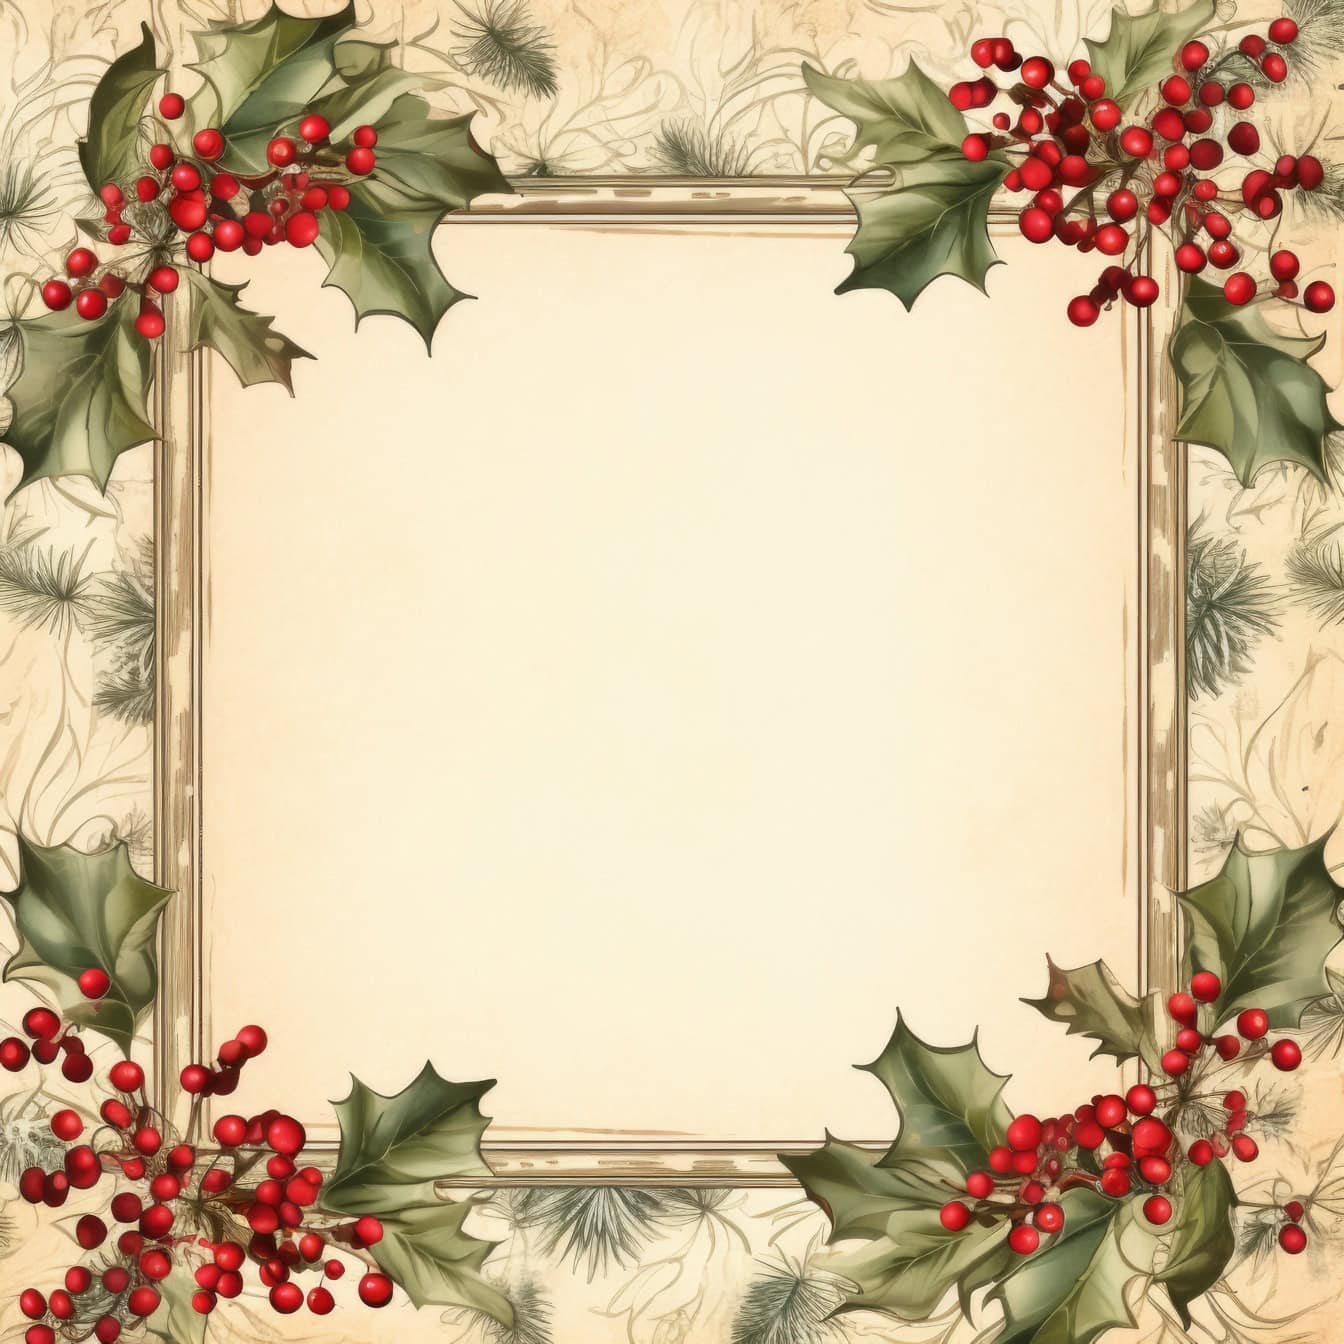 Шаблон різдвяної вітальної листівки в старовинному стилі з квадратною рамкою з червоними ягодами і листям